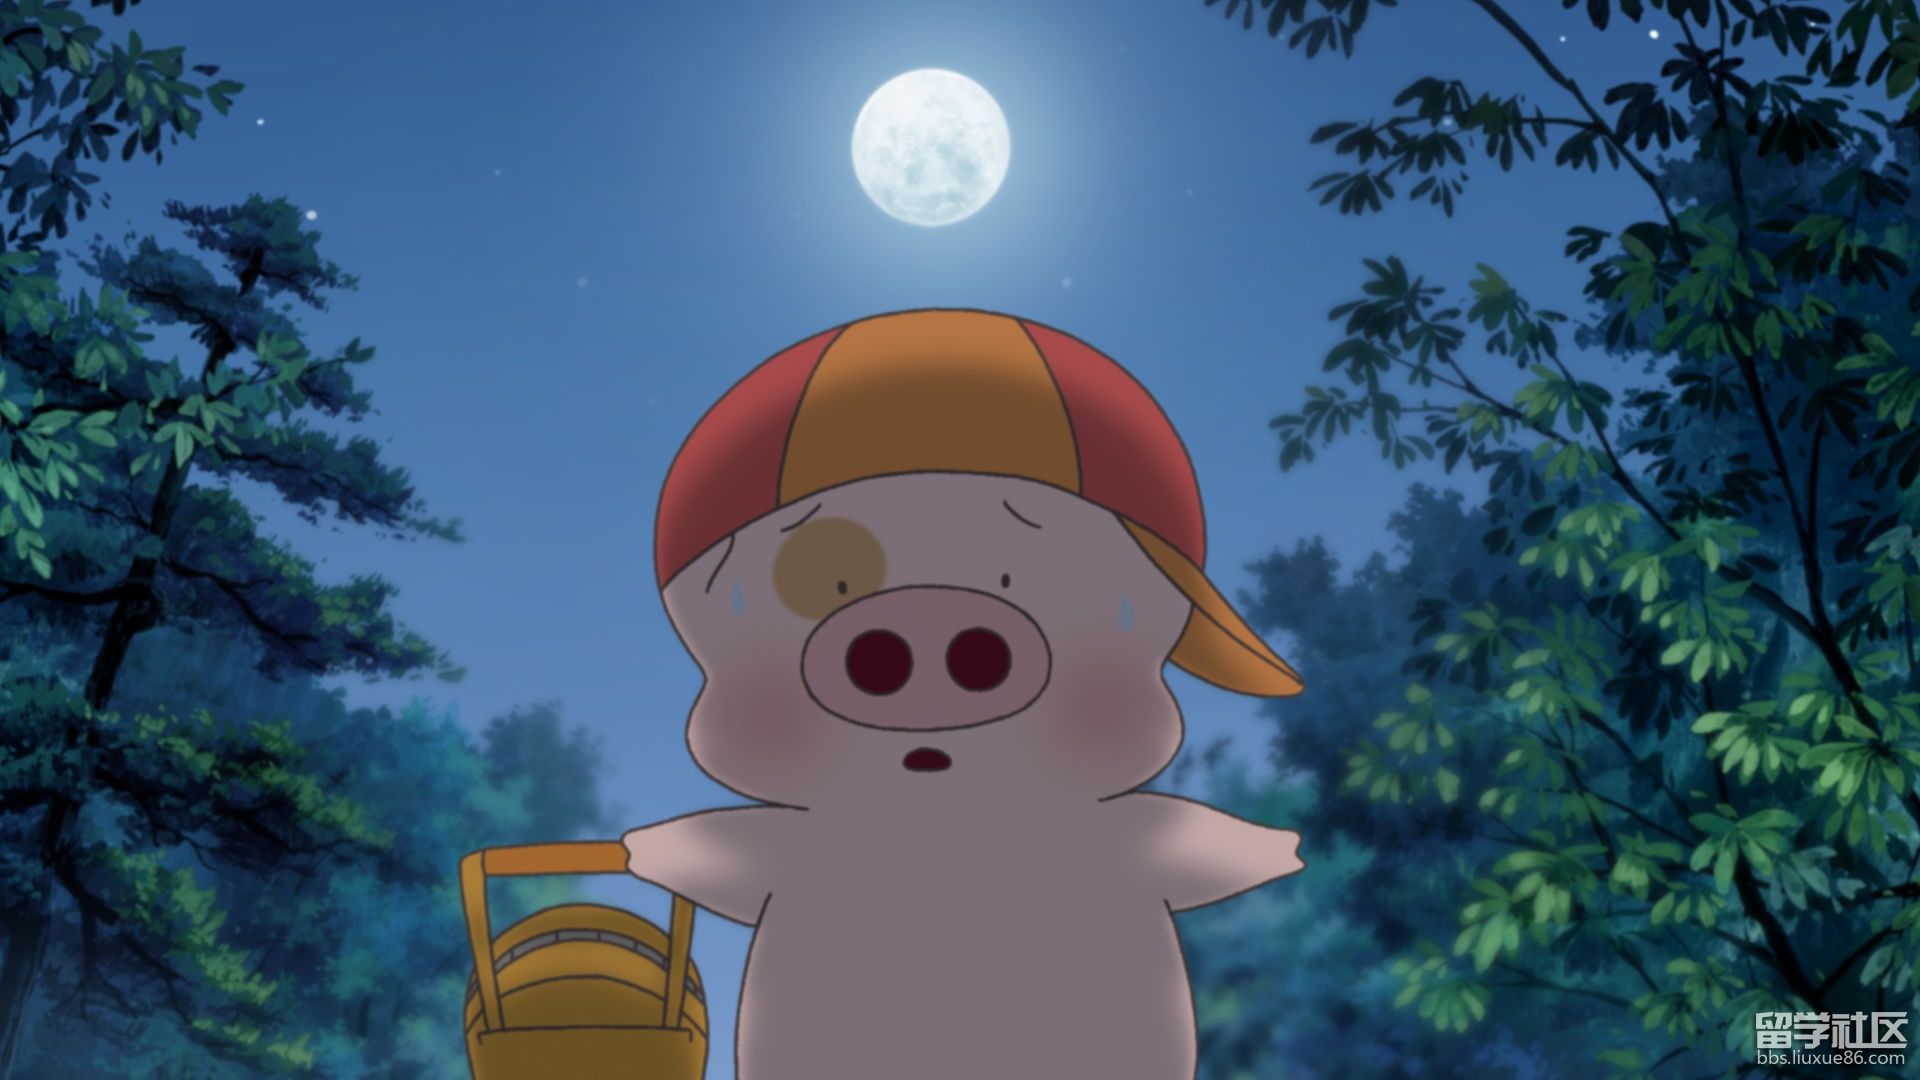 小猪麦兜是个可爱的动画角色,一直深受世界各国人民的喜爱,在小猪